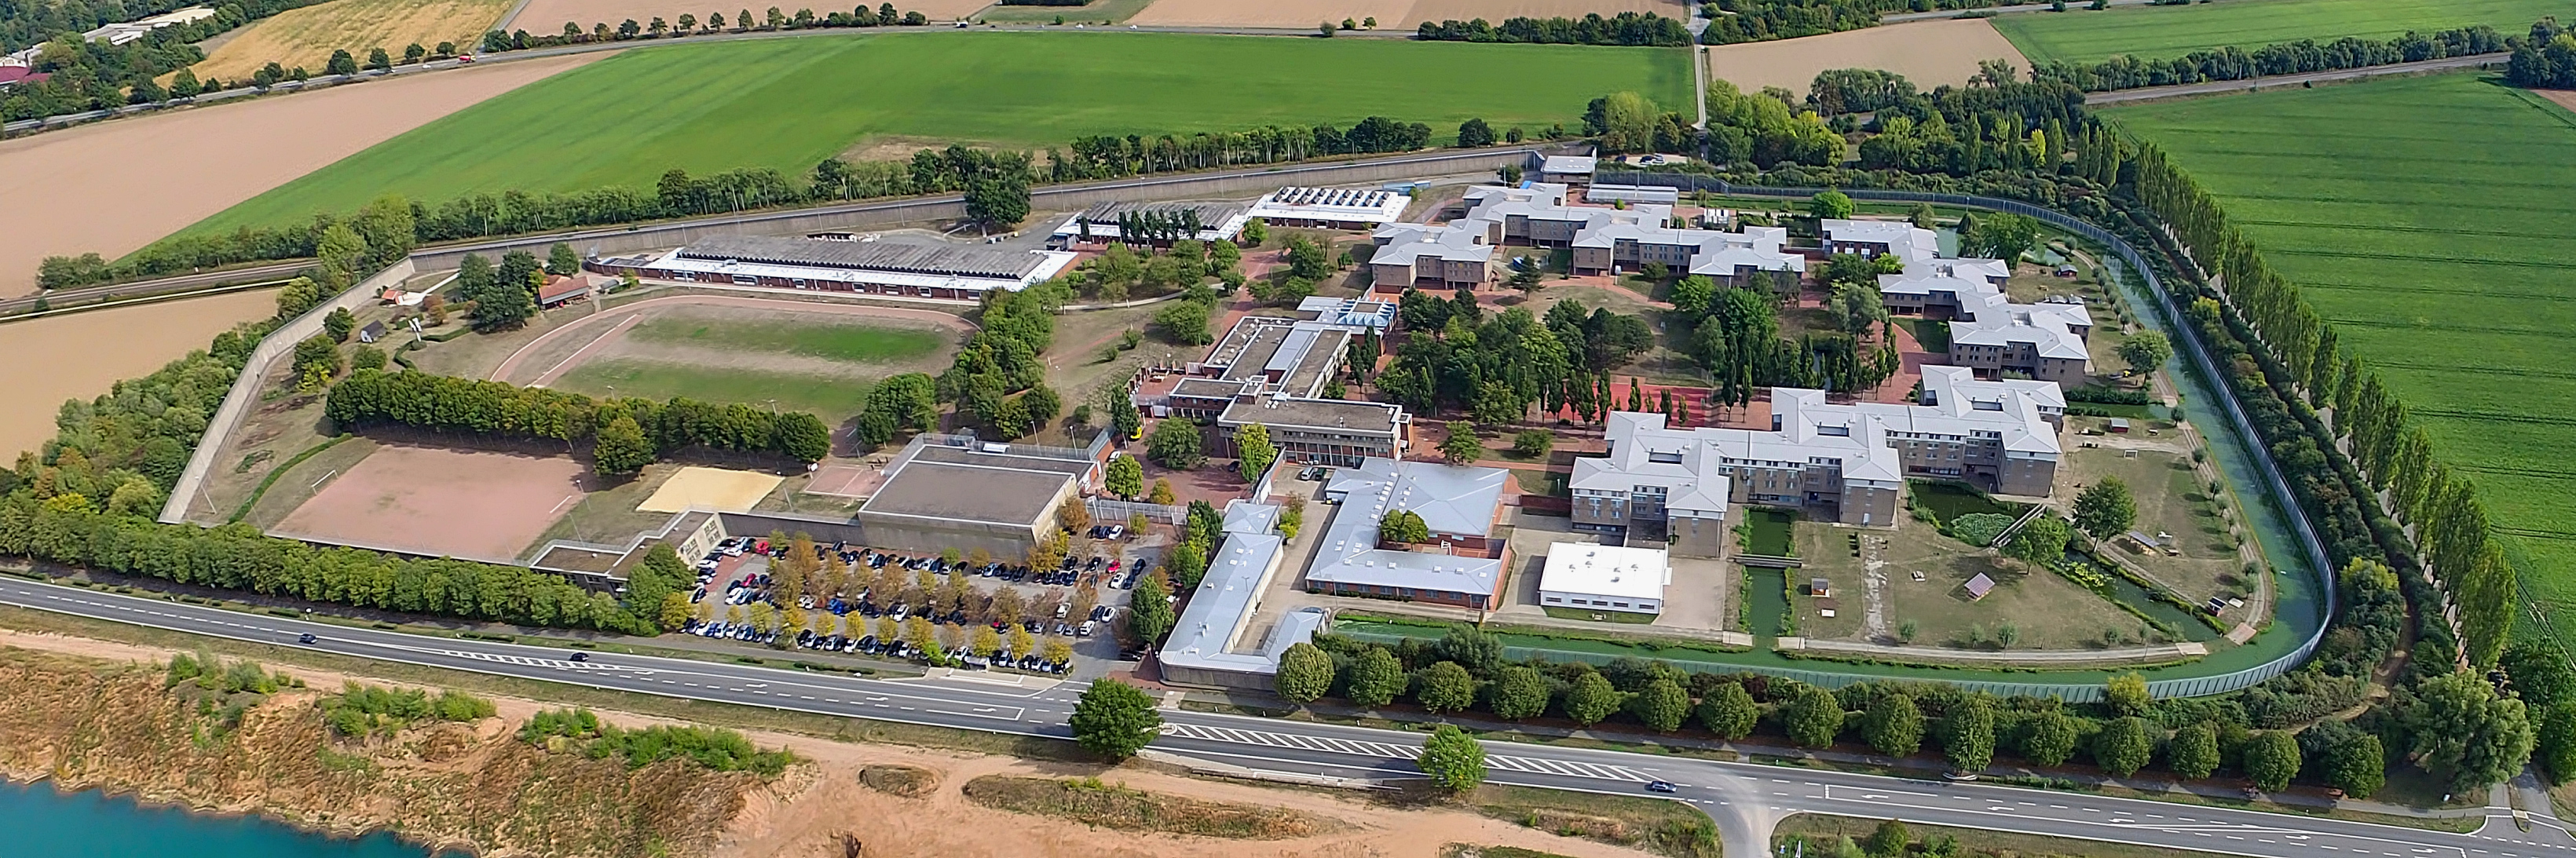 Überblick über die Jugendanstalt Hameln mit verschiedenen Gebäuden aus der Luft betrachtet